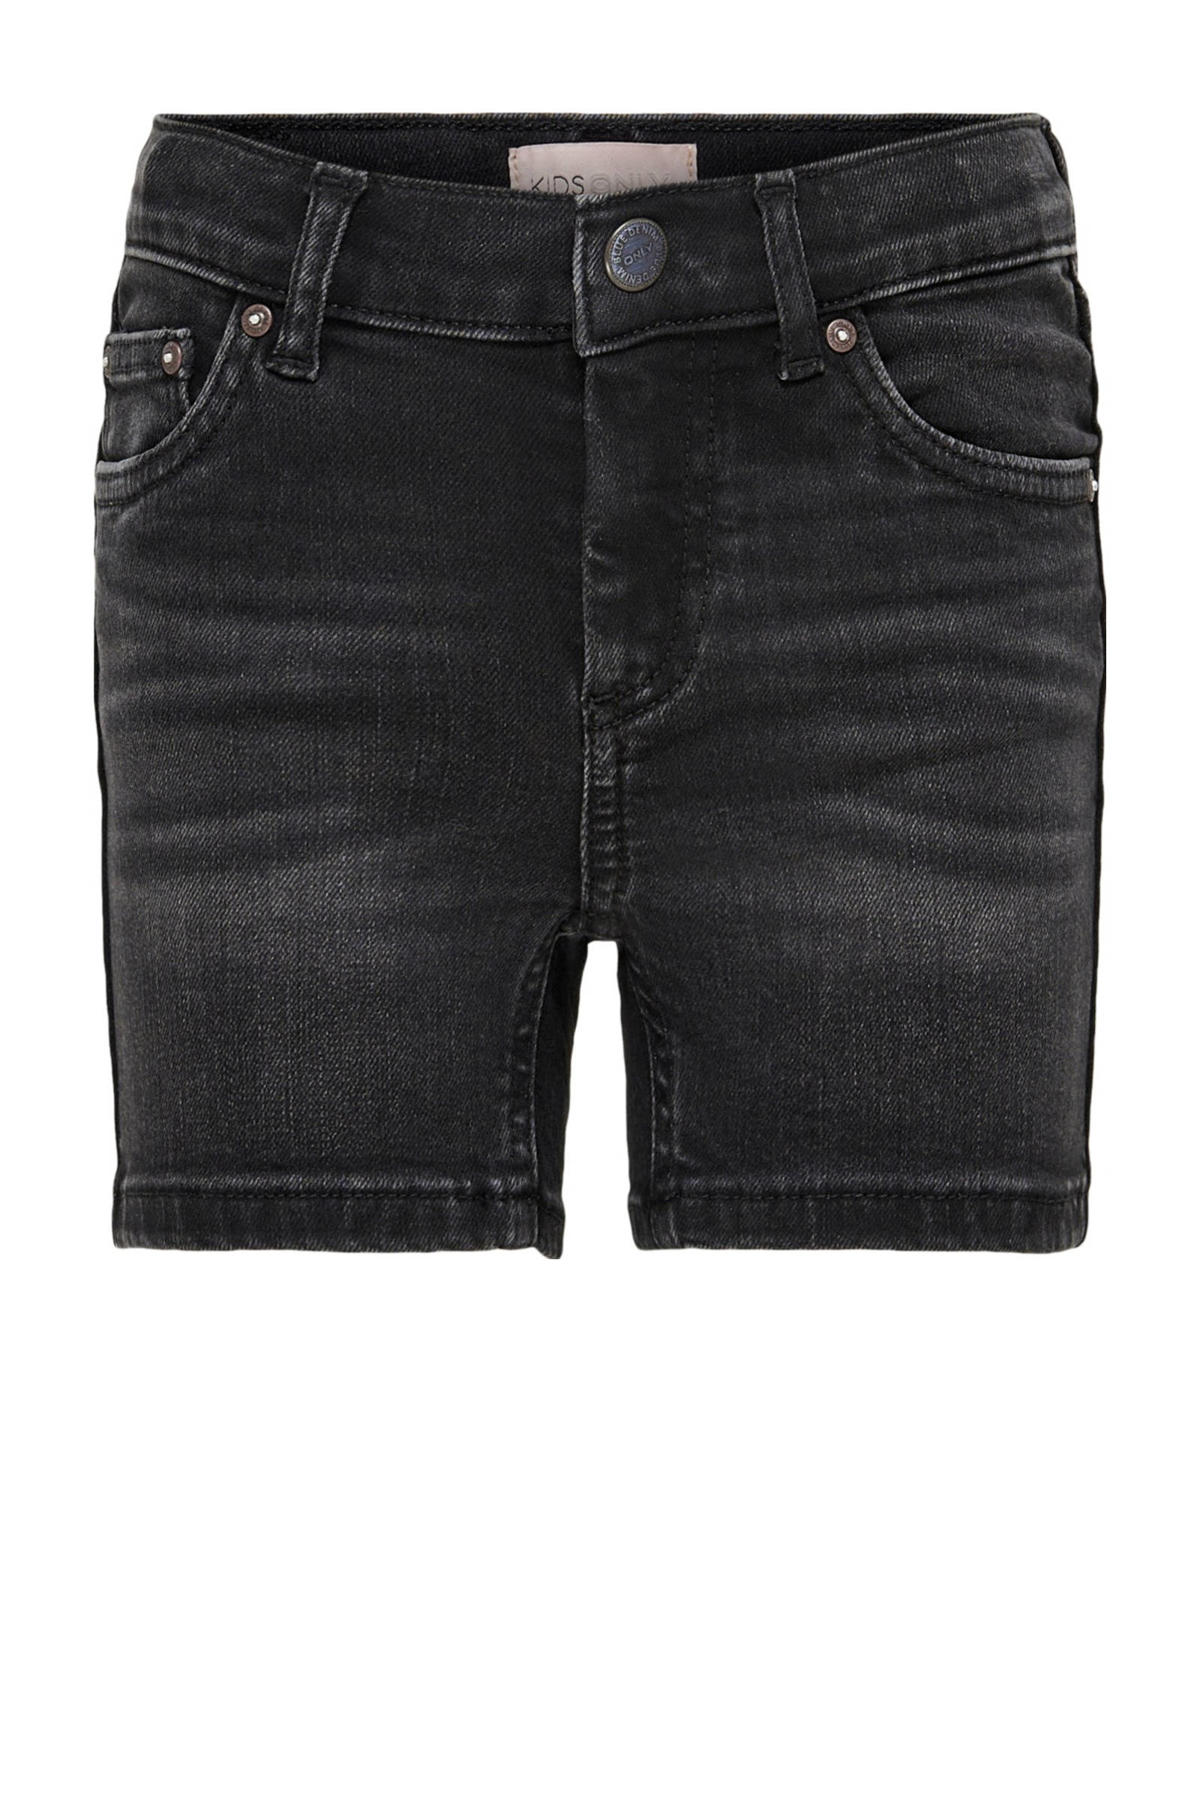 KIDS ONLY GIRL regular fit black denim | KONBLUSH short jeans wehkamp